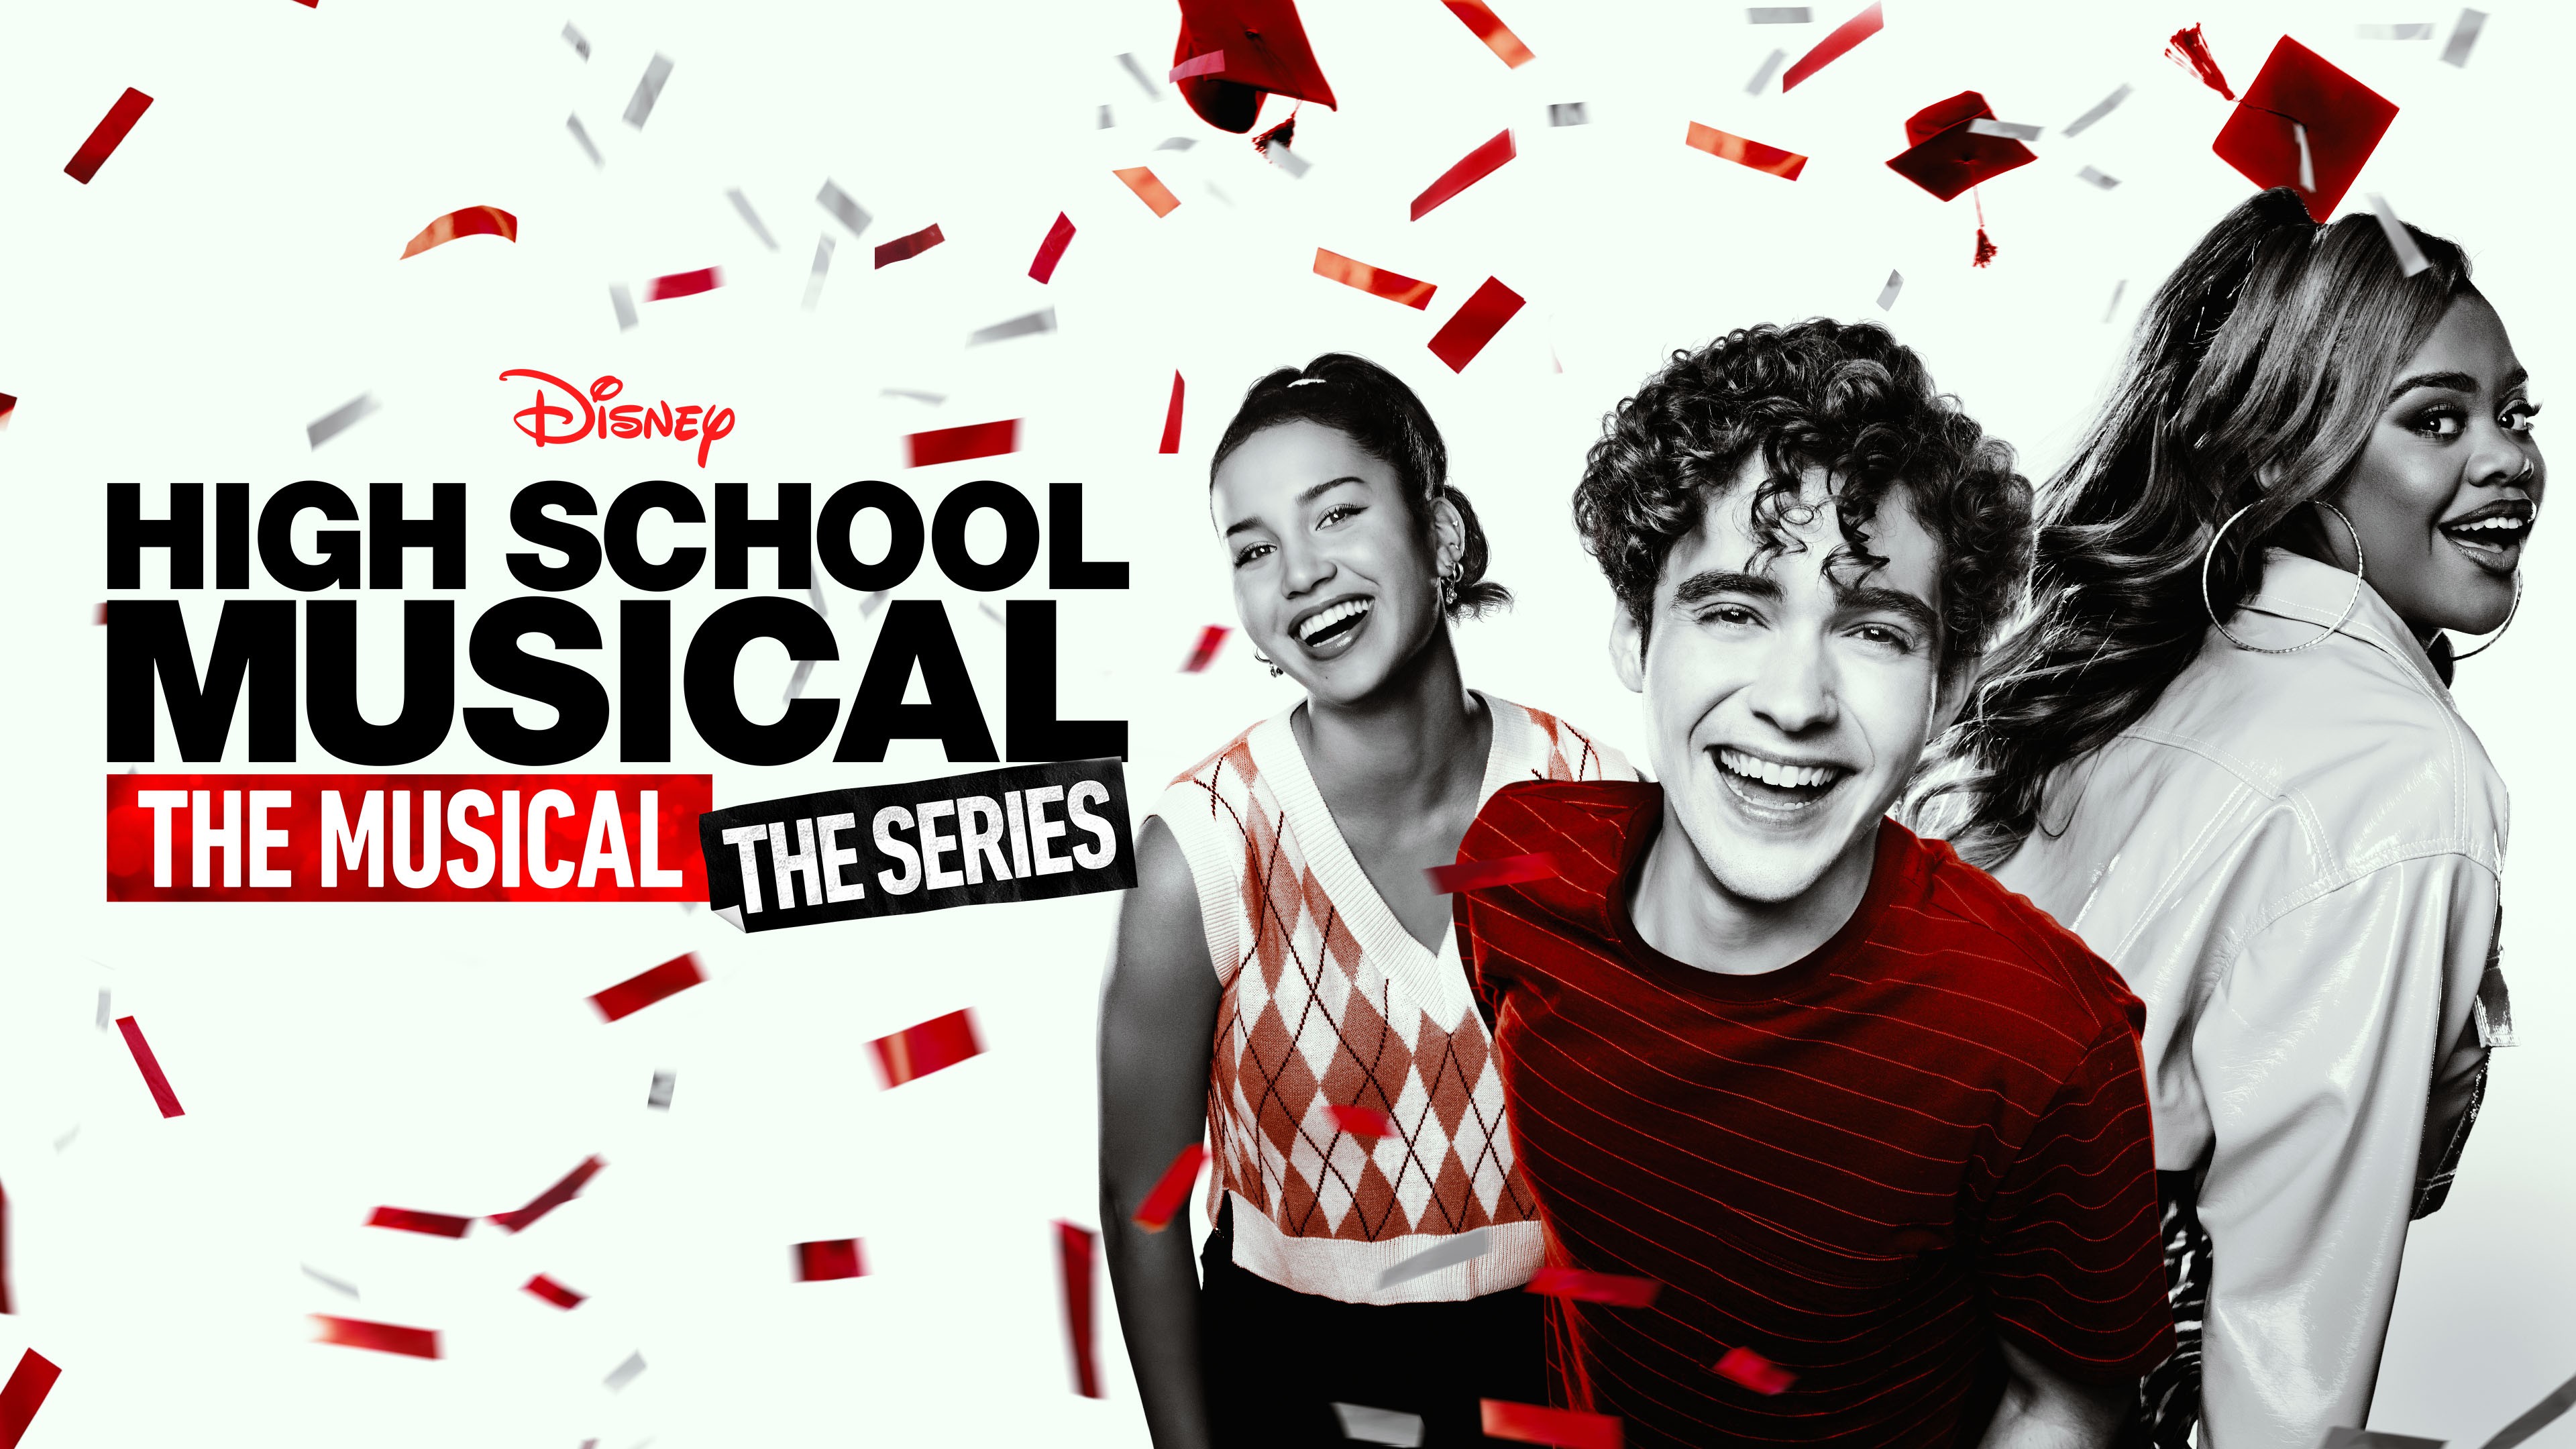 Disney High School Musical the musical series cast t-shirt